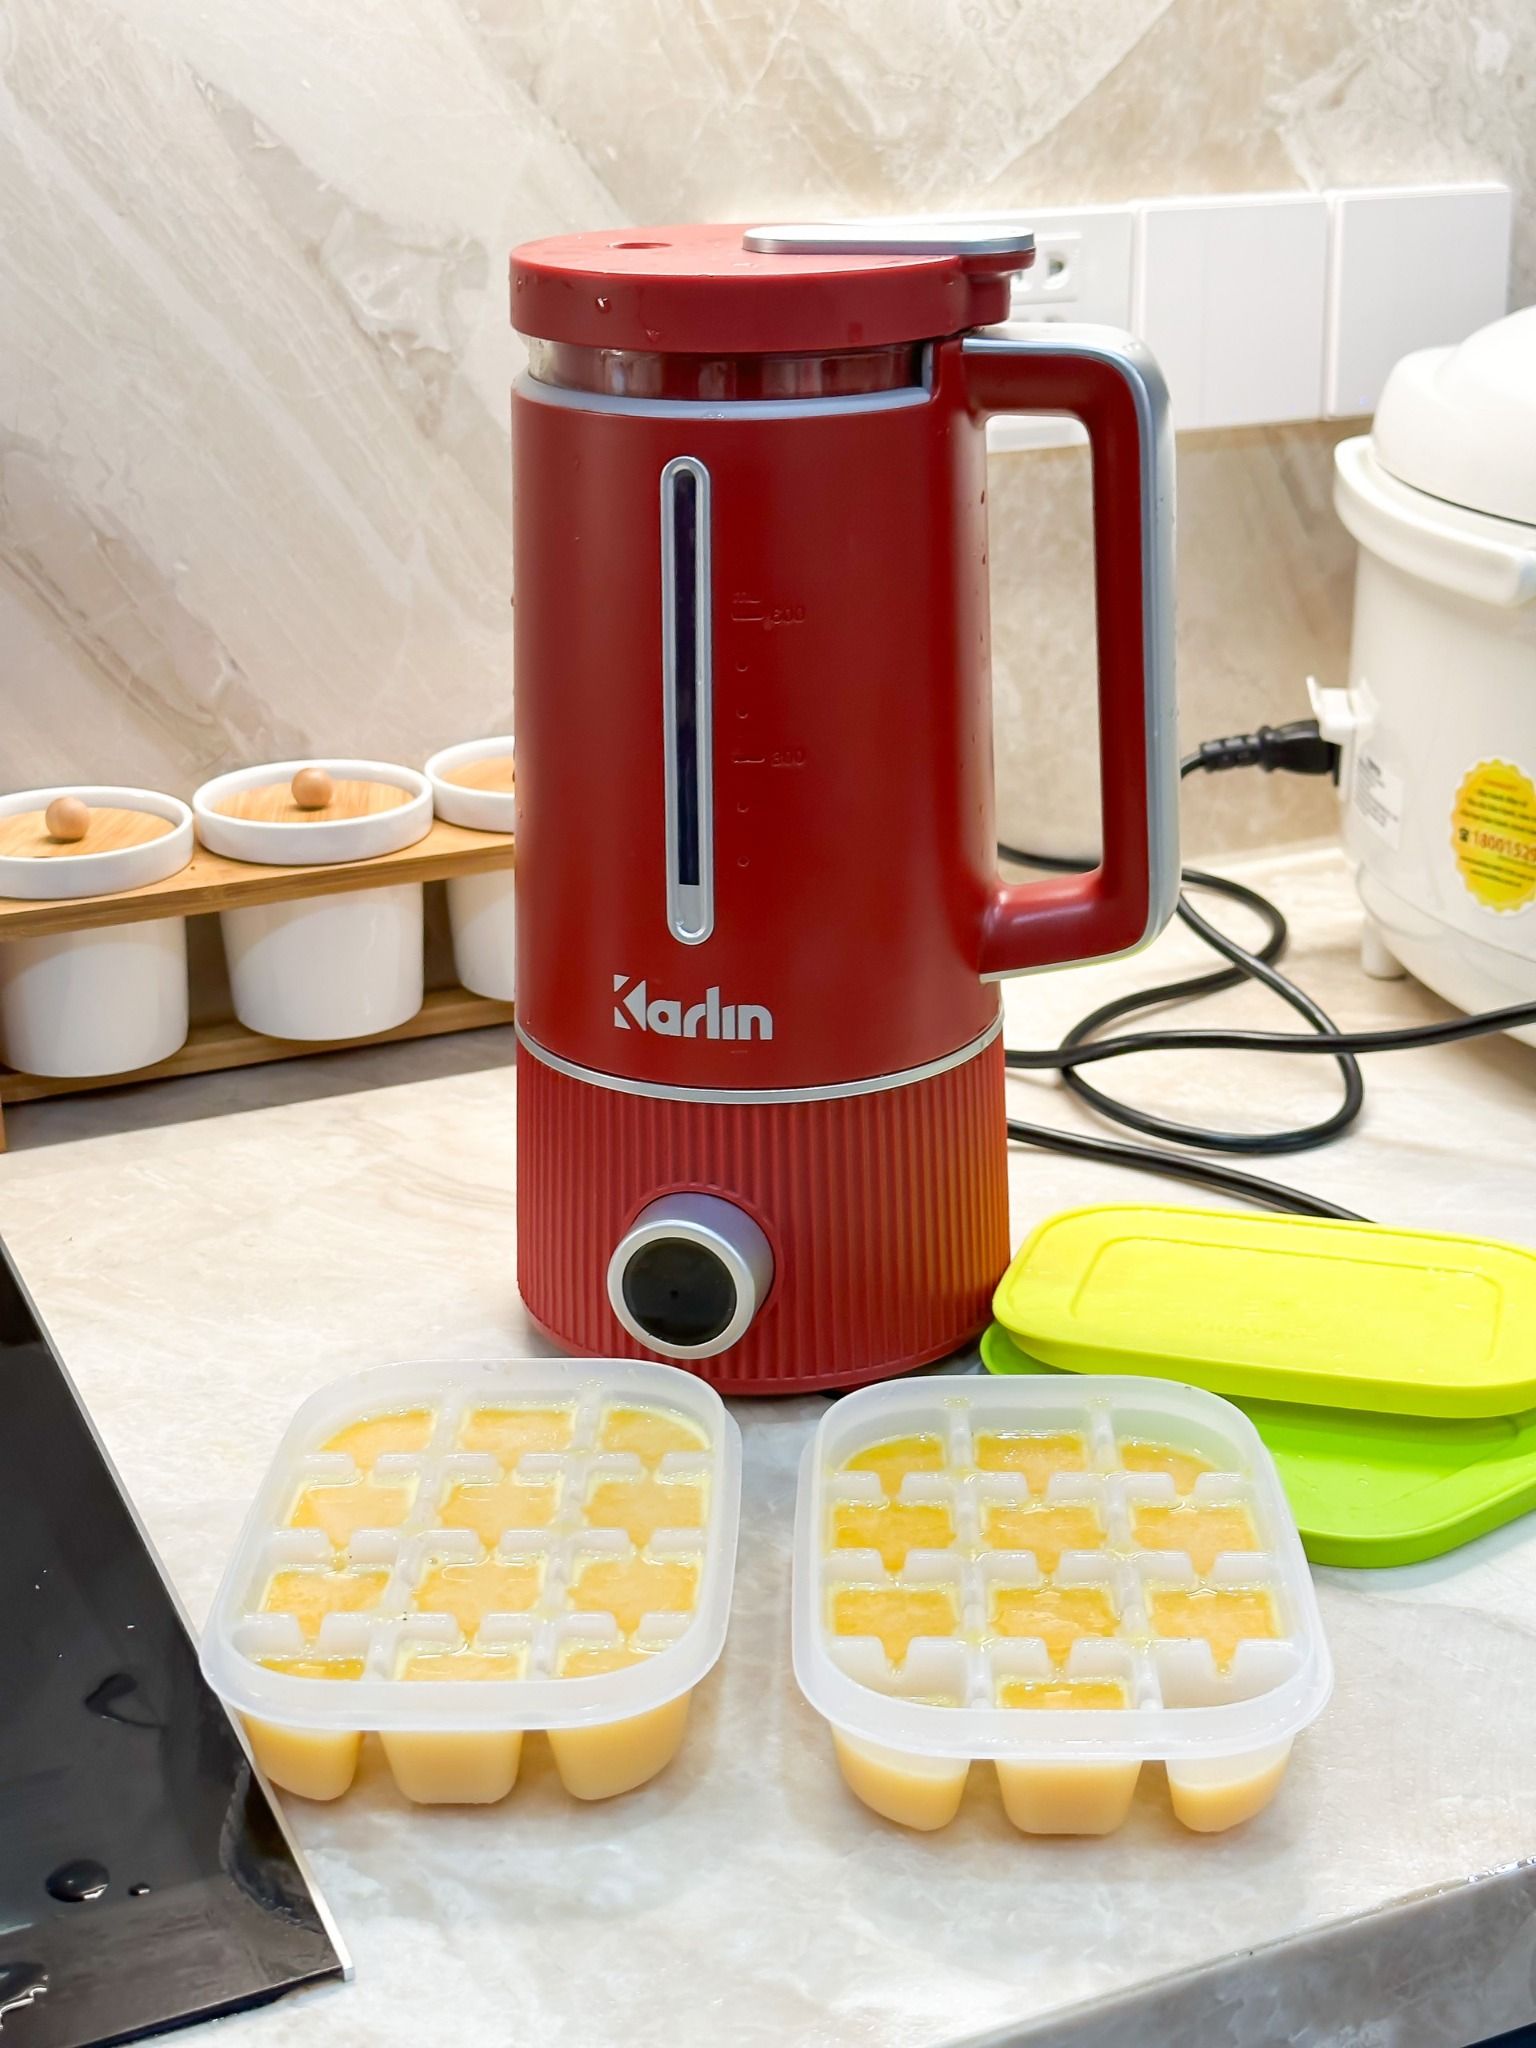  Karlin - Máy nấu sữa hạt 